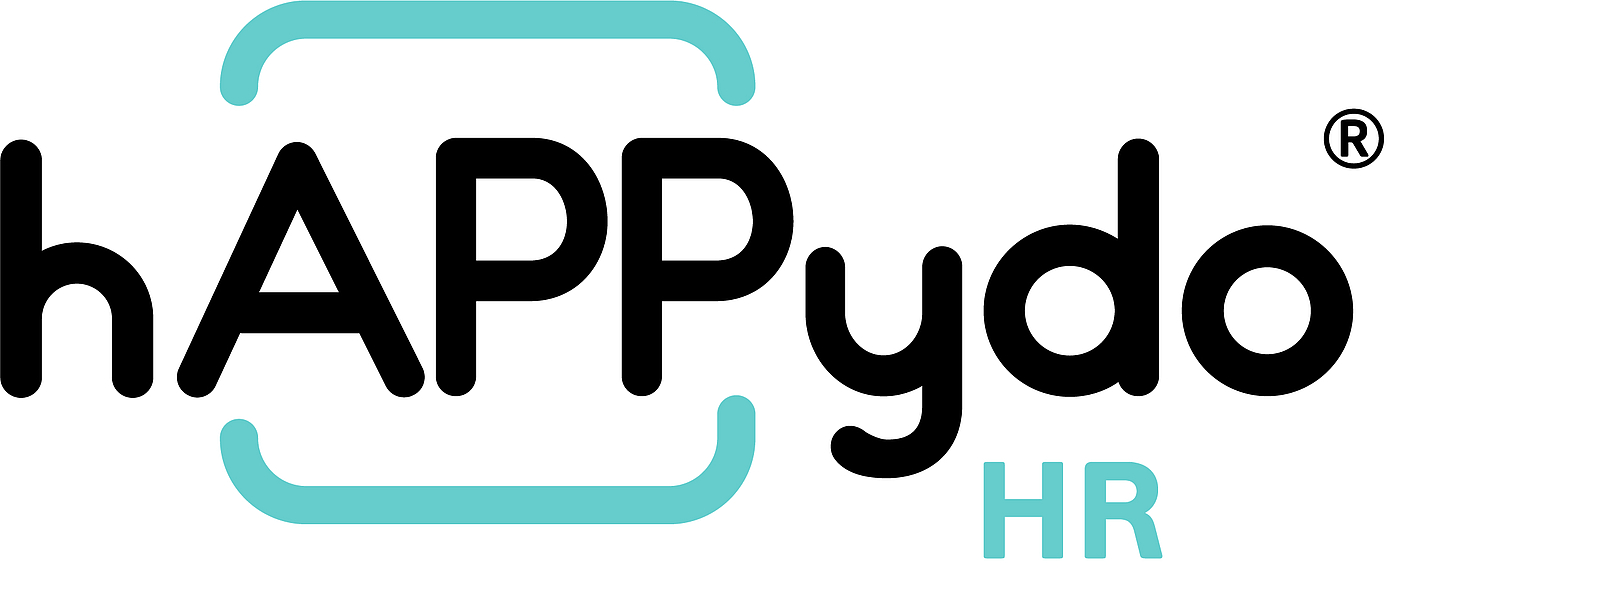 hAPPydo HR Logo